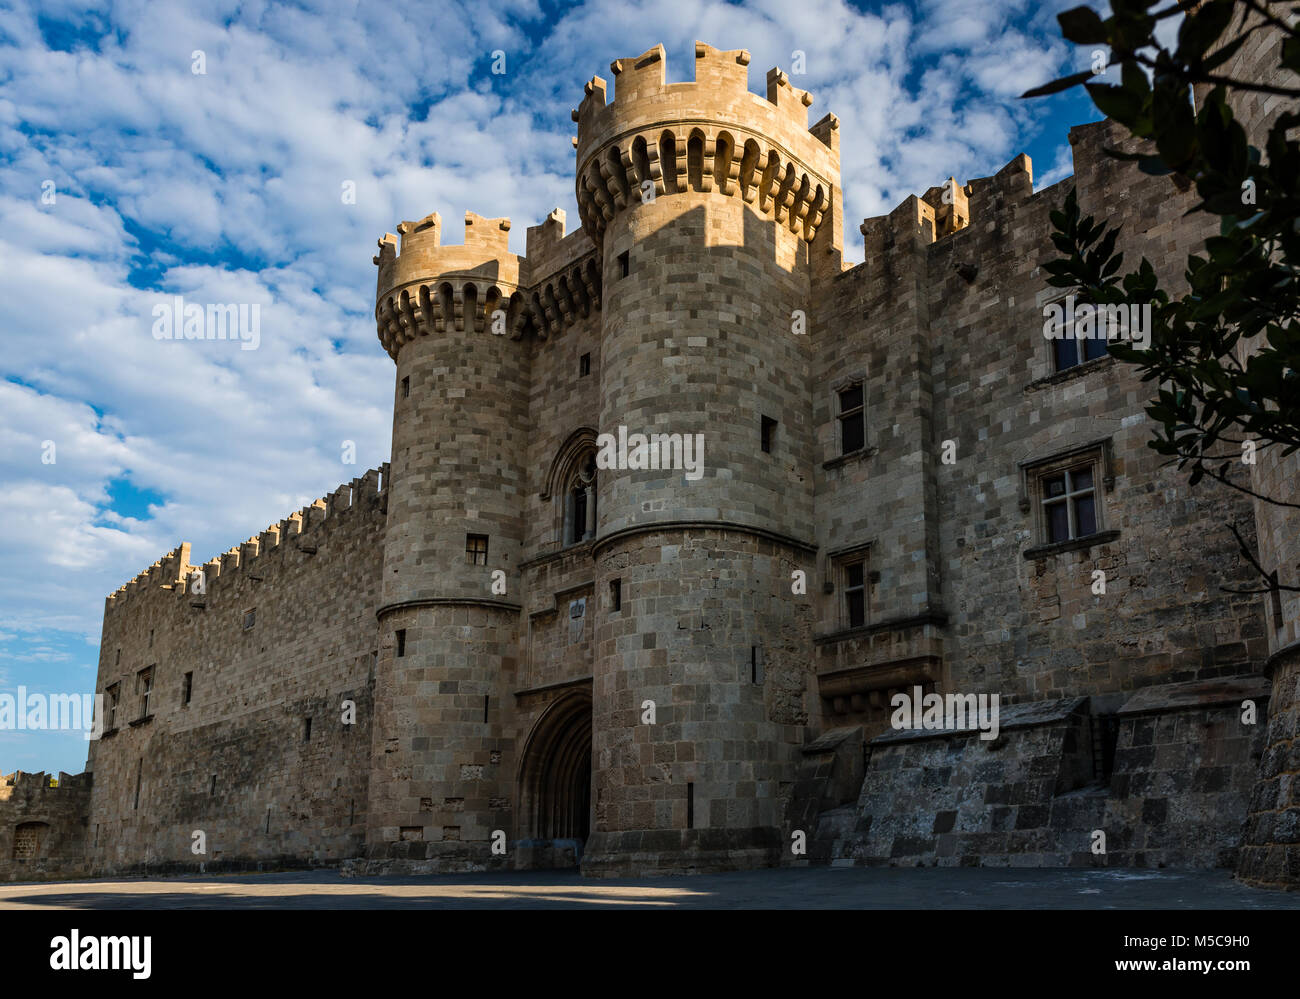 Le Palais du Grand Maître des Chevaliers de Rhodes alias le Castello, est un château médiéval dans la région de Rhodes, en Grèce. Banque D'Images